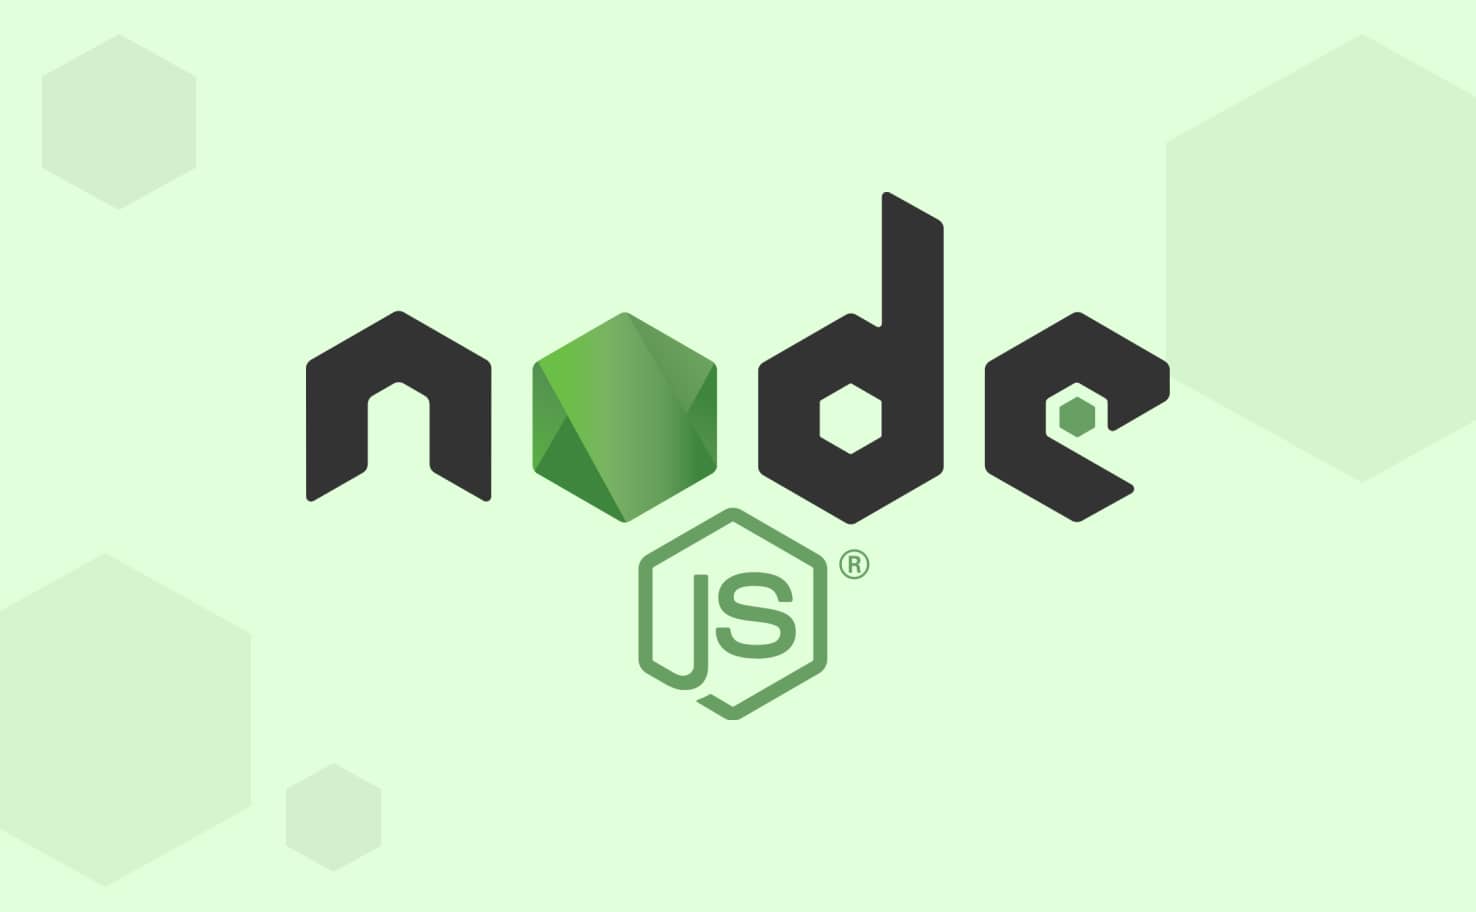 Tutoriel expliquant et montrant comment développer sa première application avec NodeJS